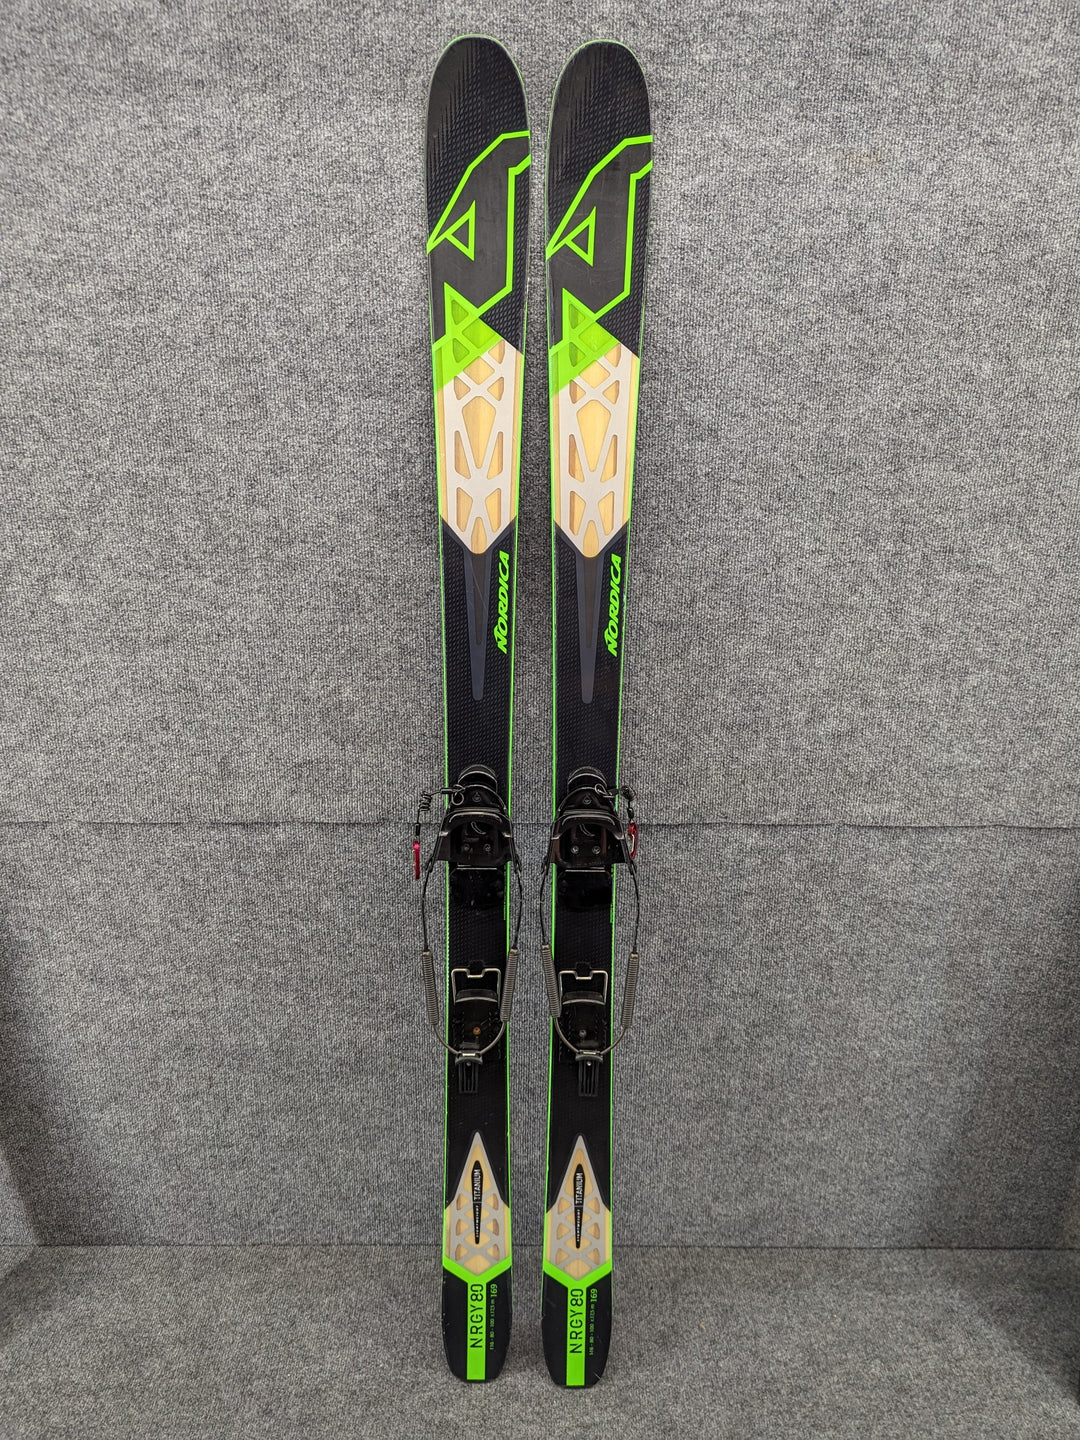 Nordica Length 169 cm/66.5" Men's Telemark Skis